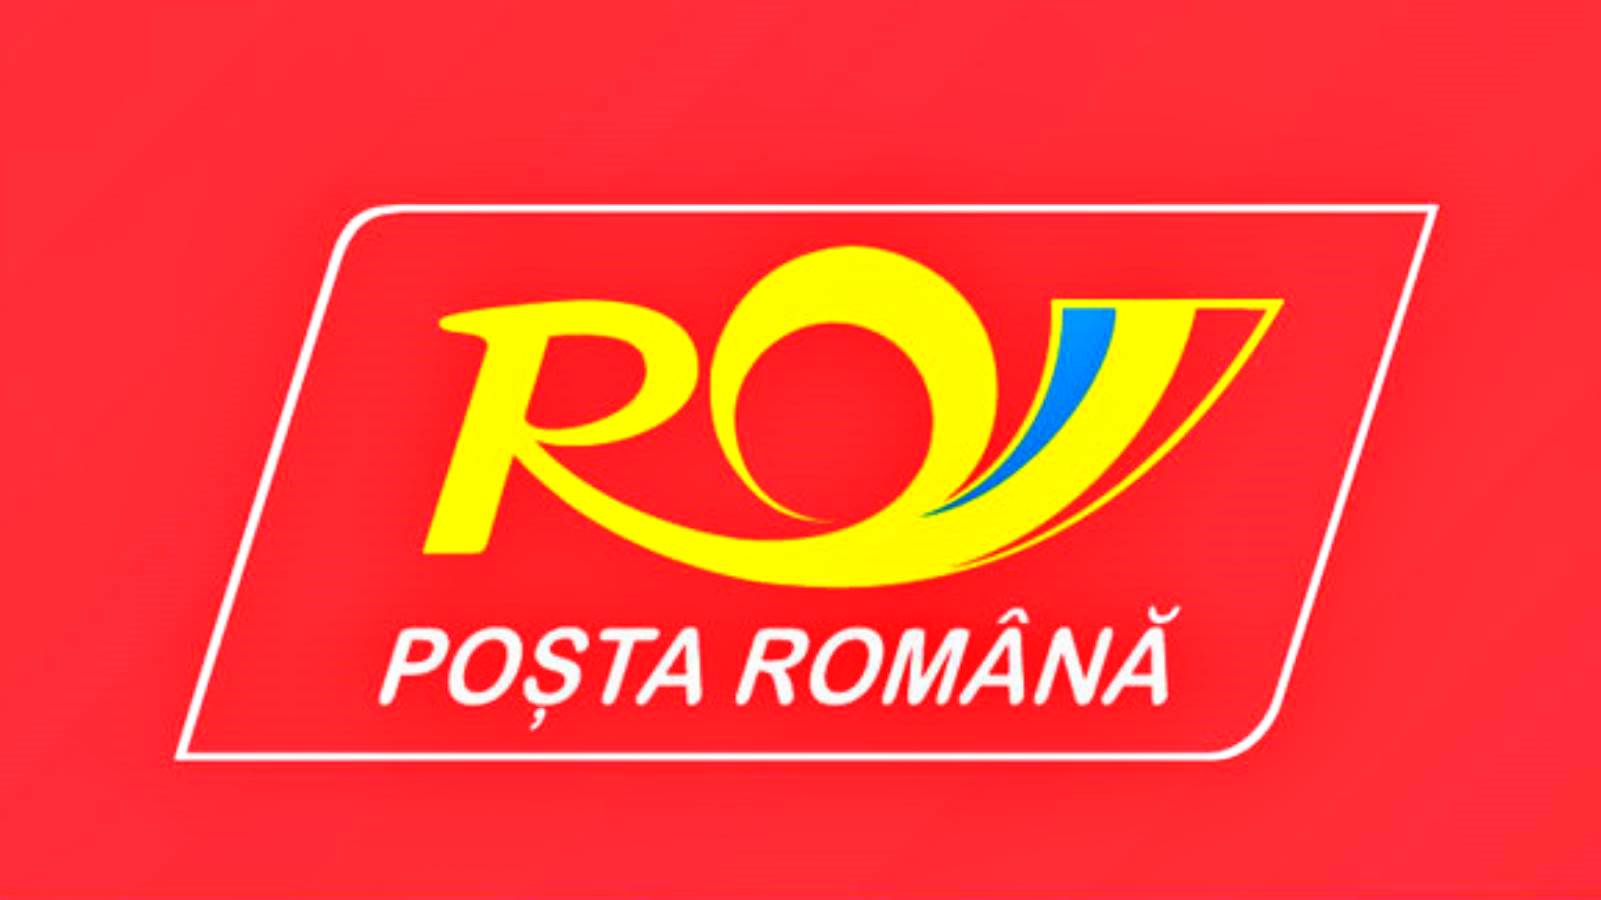 Ostrzeżenie poczty rumuńskiej dotyczące przedmiotów zabronionych w paczkach